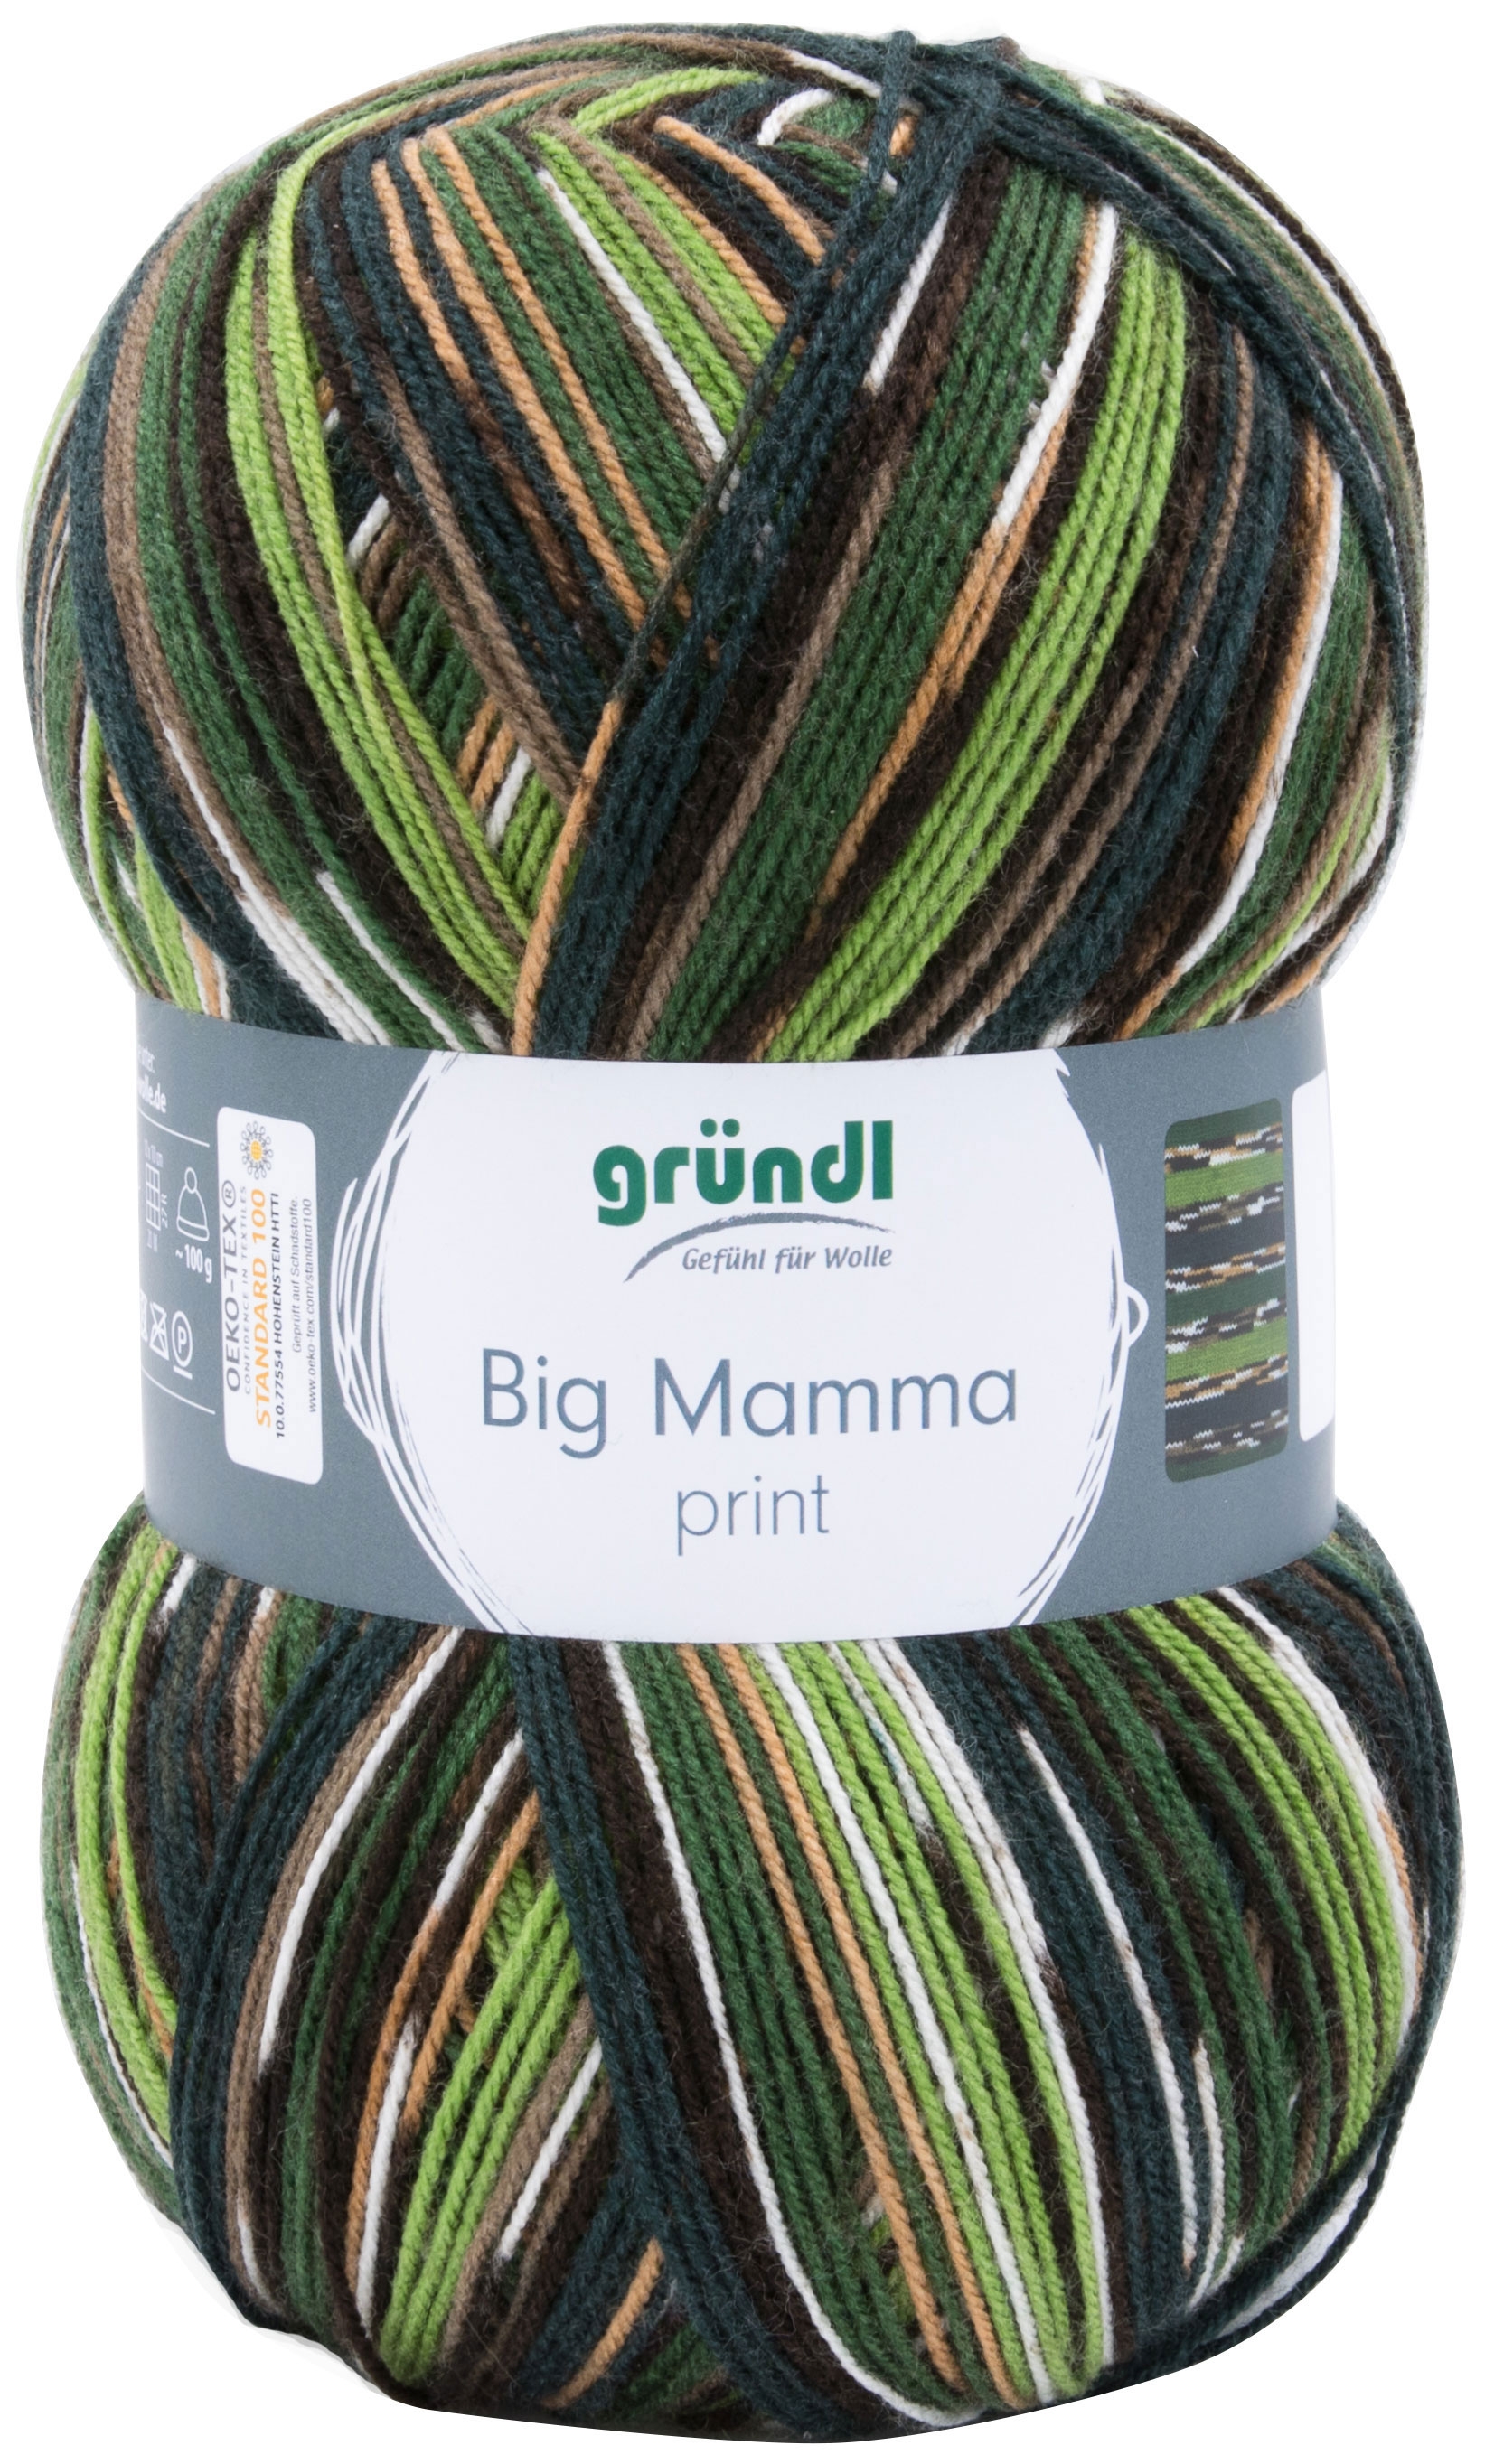 GRÜNDL Garn Big Mamma print 400 g grün/braun/weiß